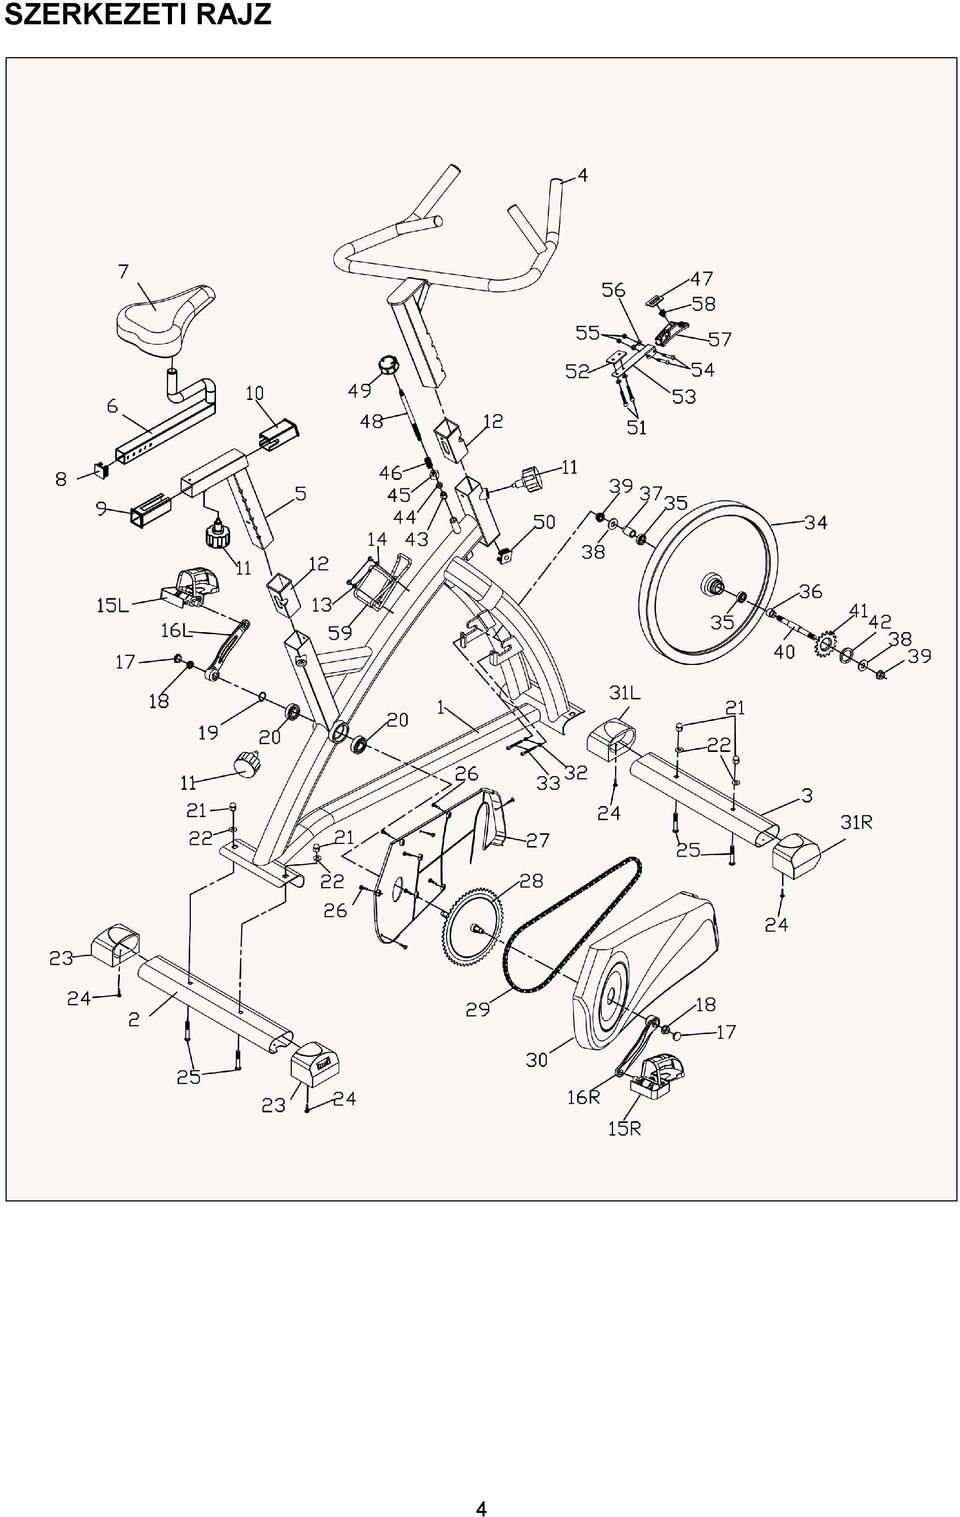 HASZNÁLATI ÚTMUTATÓ HU IN 4422 Spinning kerékpár insportline Jota - PDF  Ingyenes letöltés